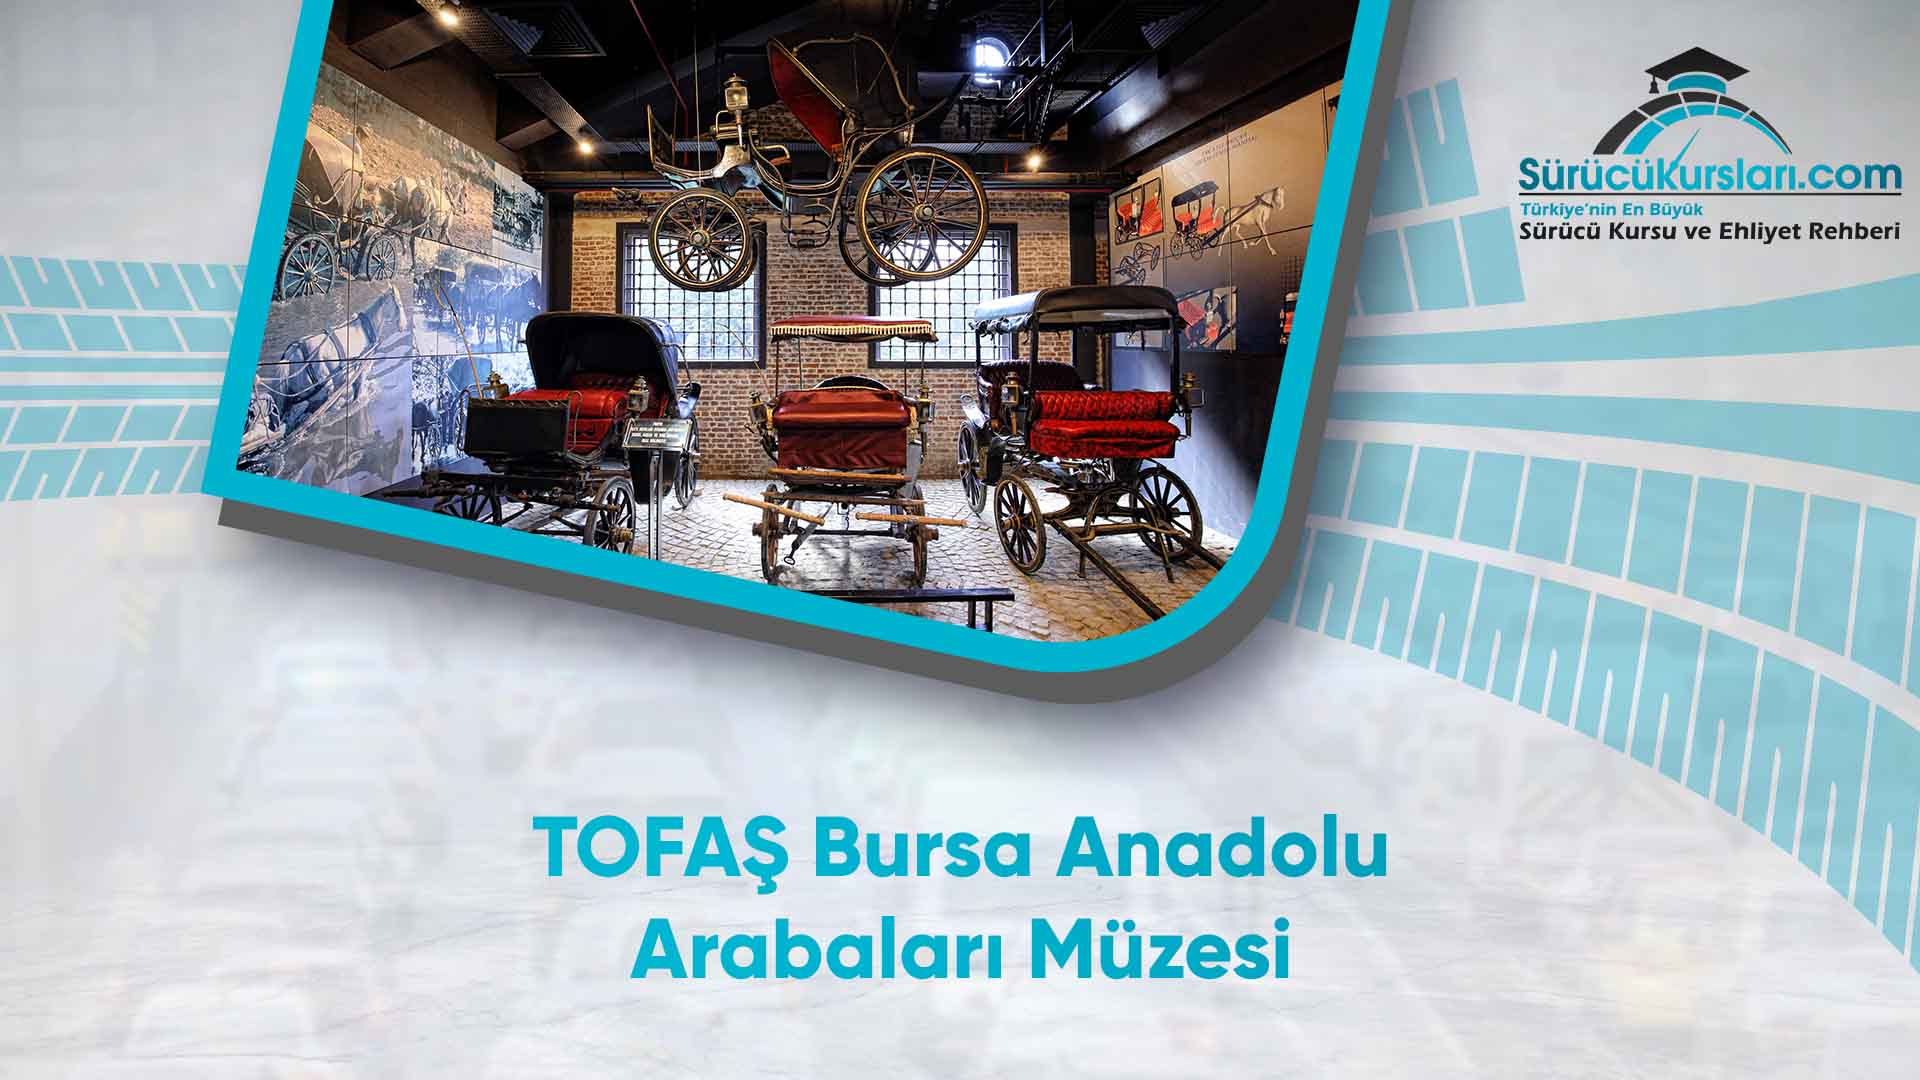 TOFAŞ Bursa Anadolu Arabaları Müzesi